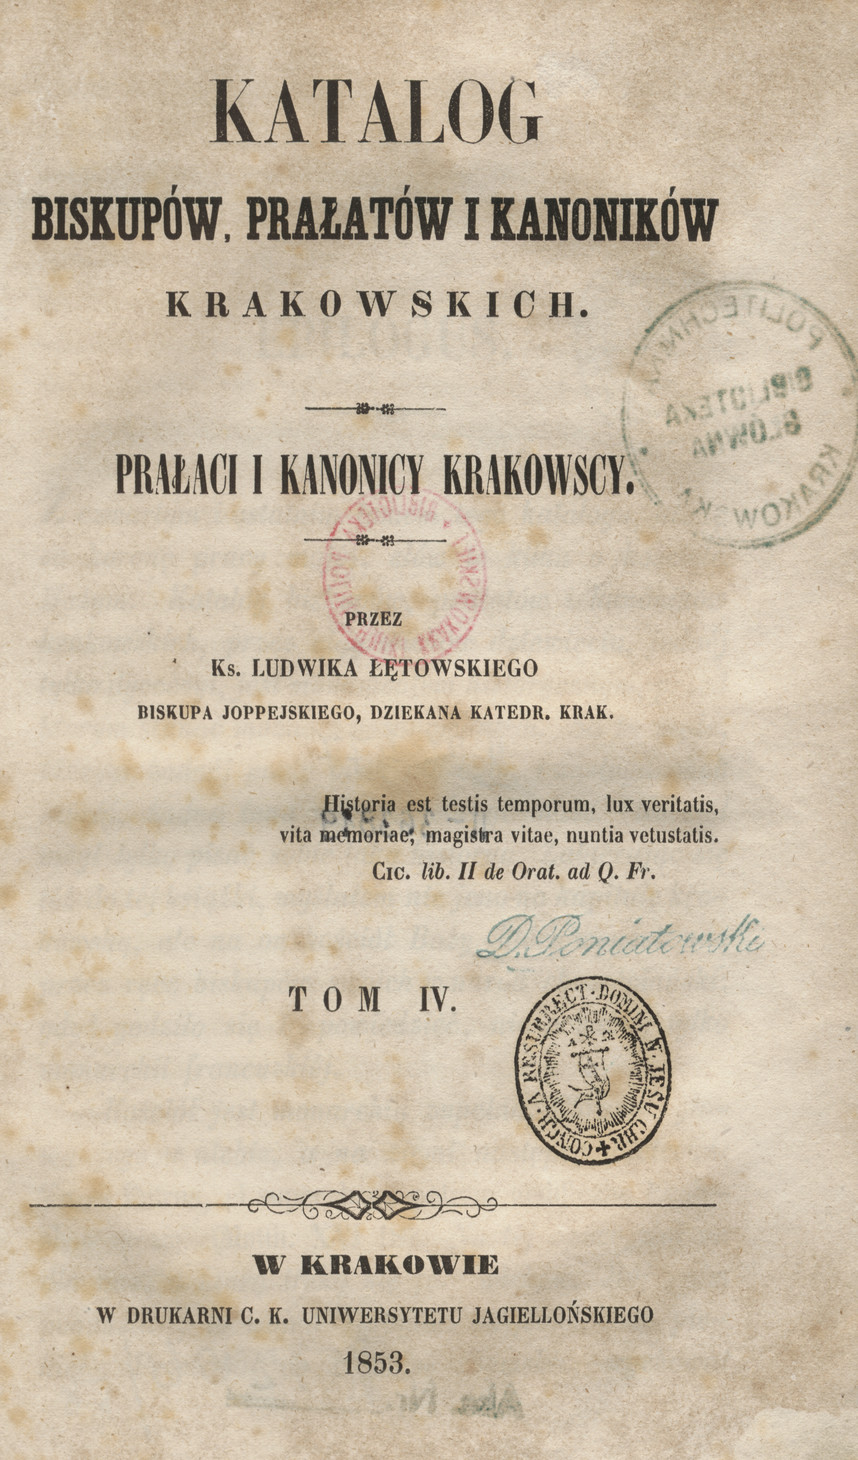 Katalog biskupów, prałatów i kanoników krakowskich. T. 4, Prałaci i kanonicy krakowscy